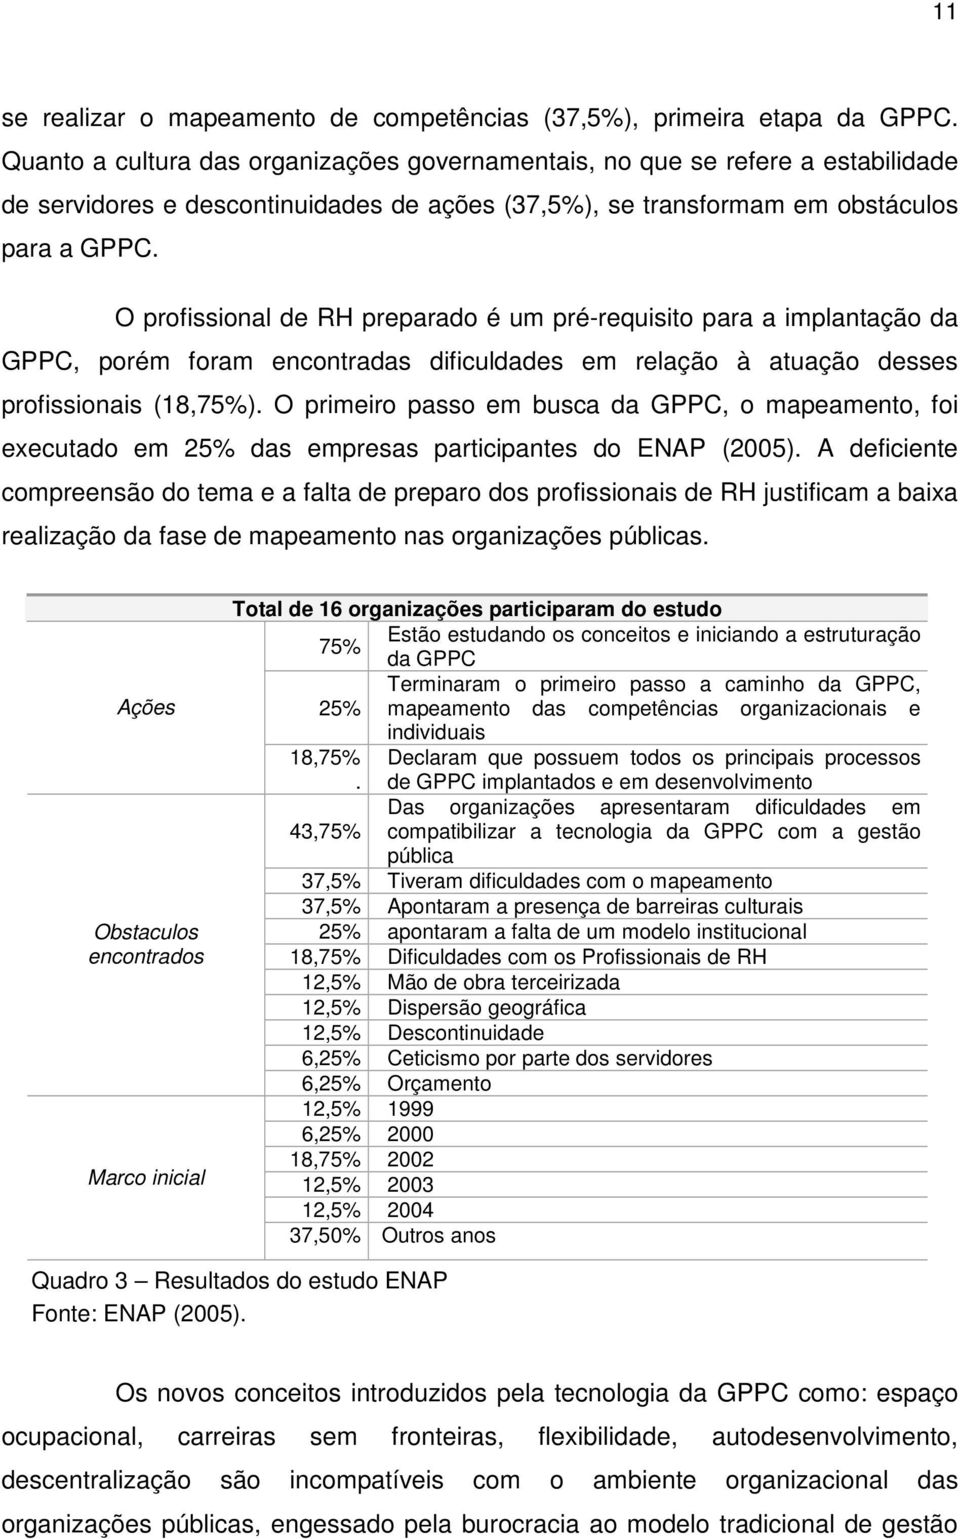 O profissional de RH preparado é um pré-requisito para a implantação da GPPC, porém foram encontradas dificuldades em relação à atuação desses profissionais (18,75%).